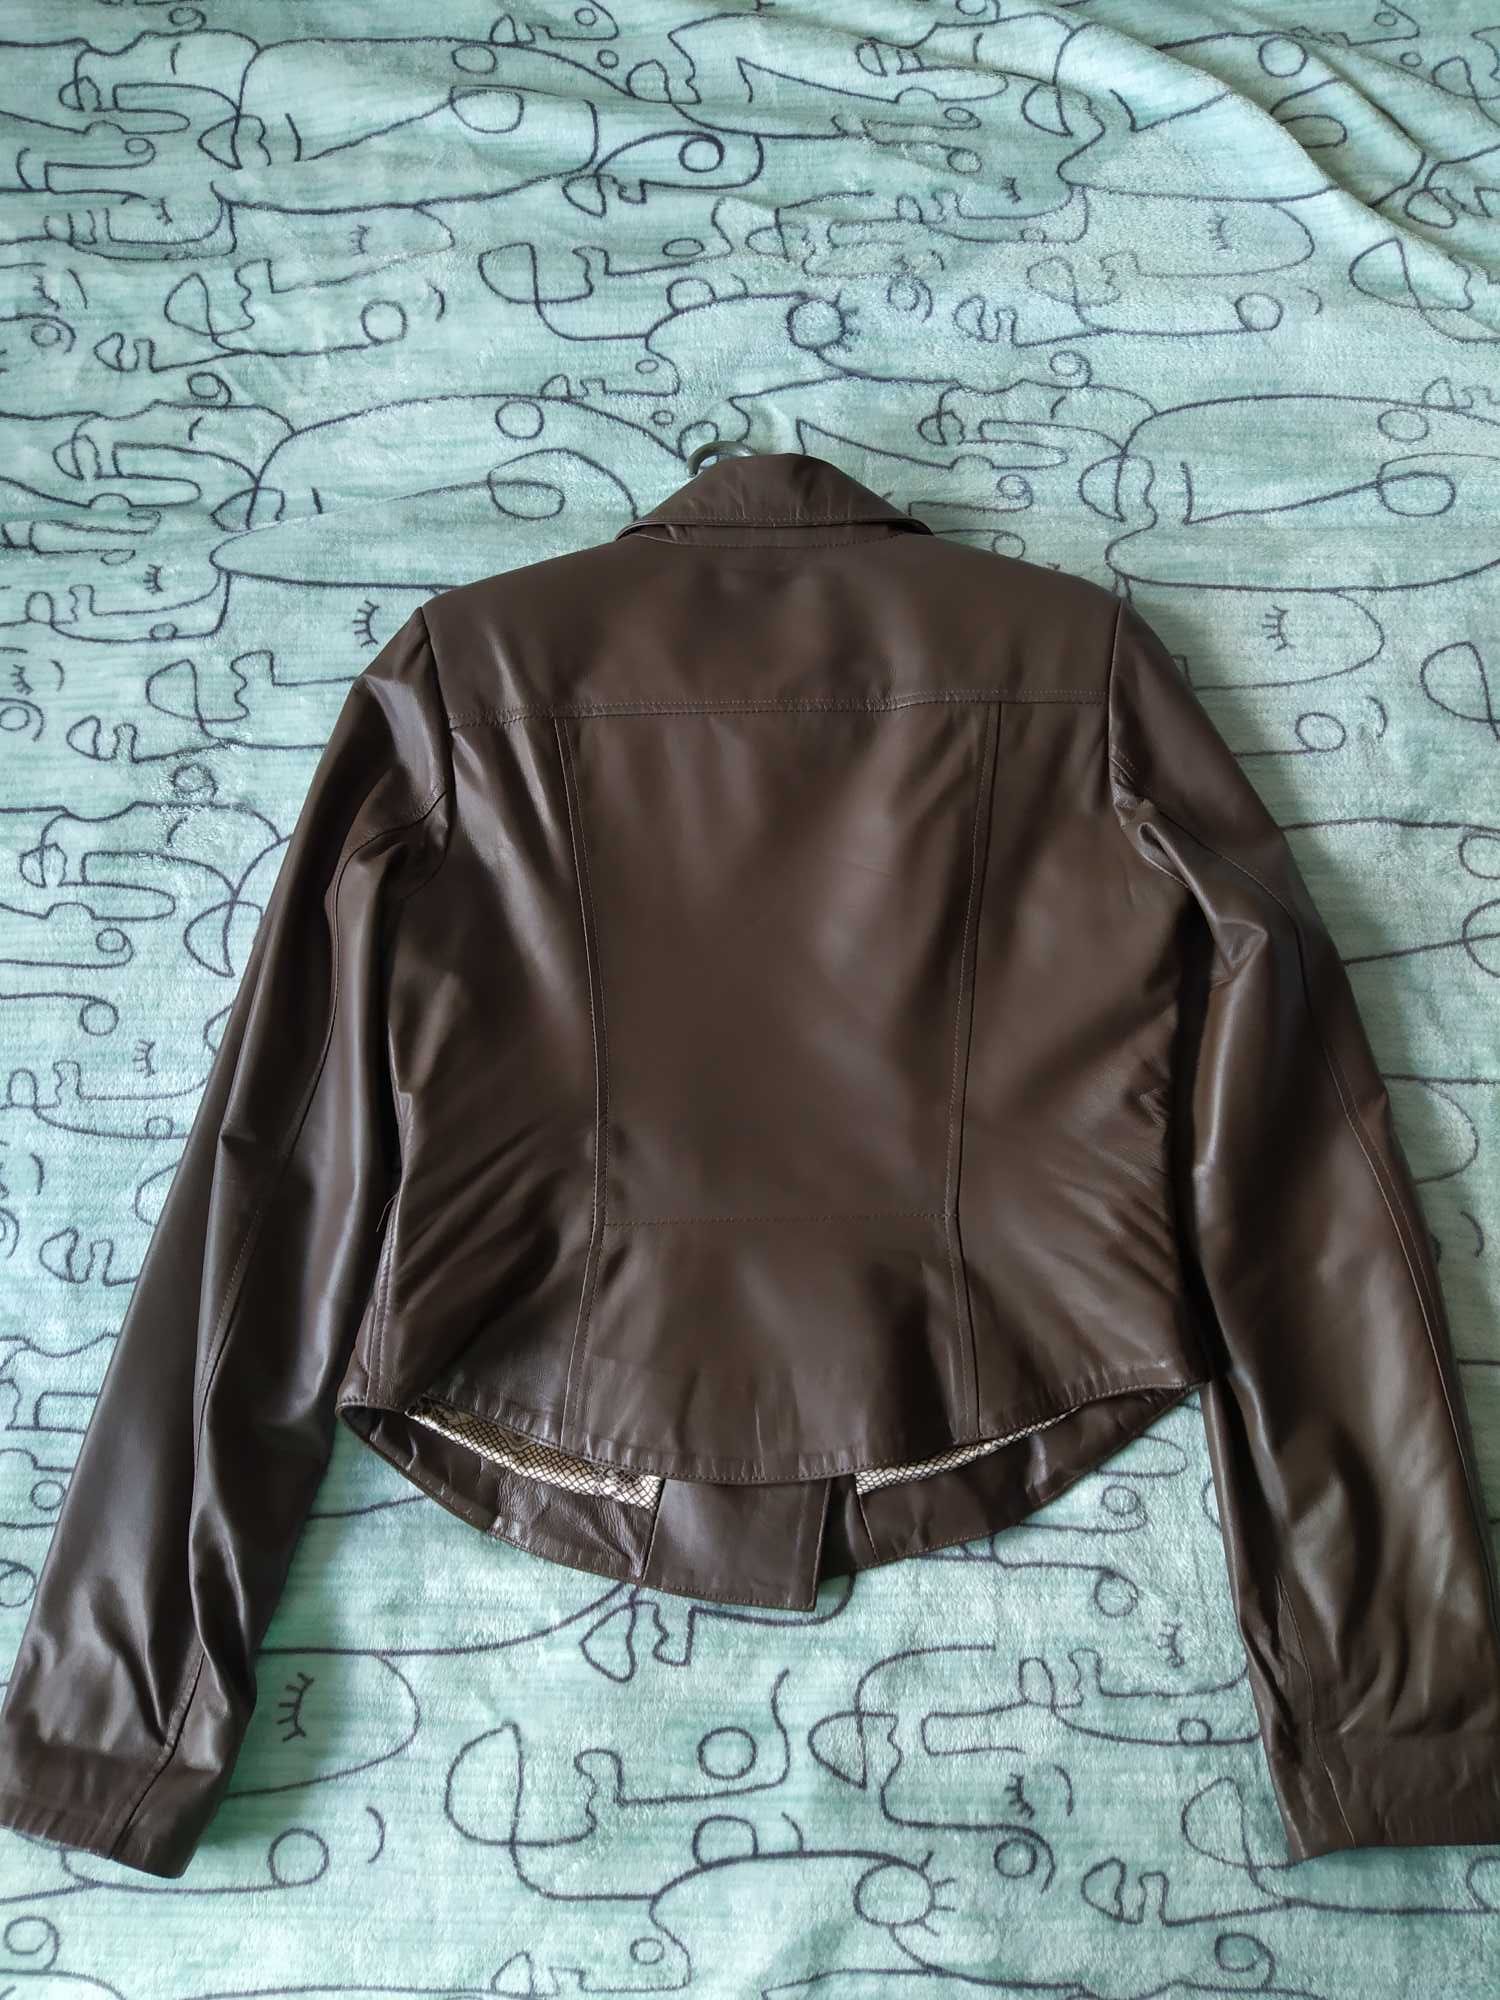 Натуральная кожаная куртка косуха или обмен на памперсы 6рка